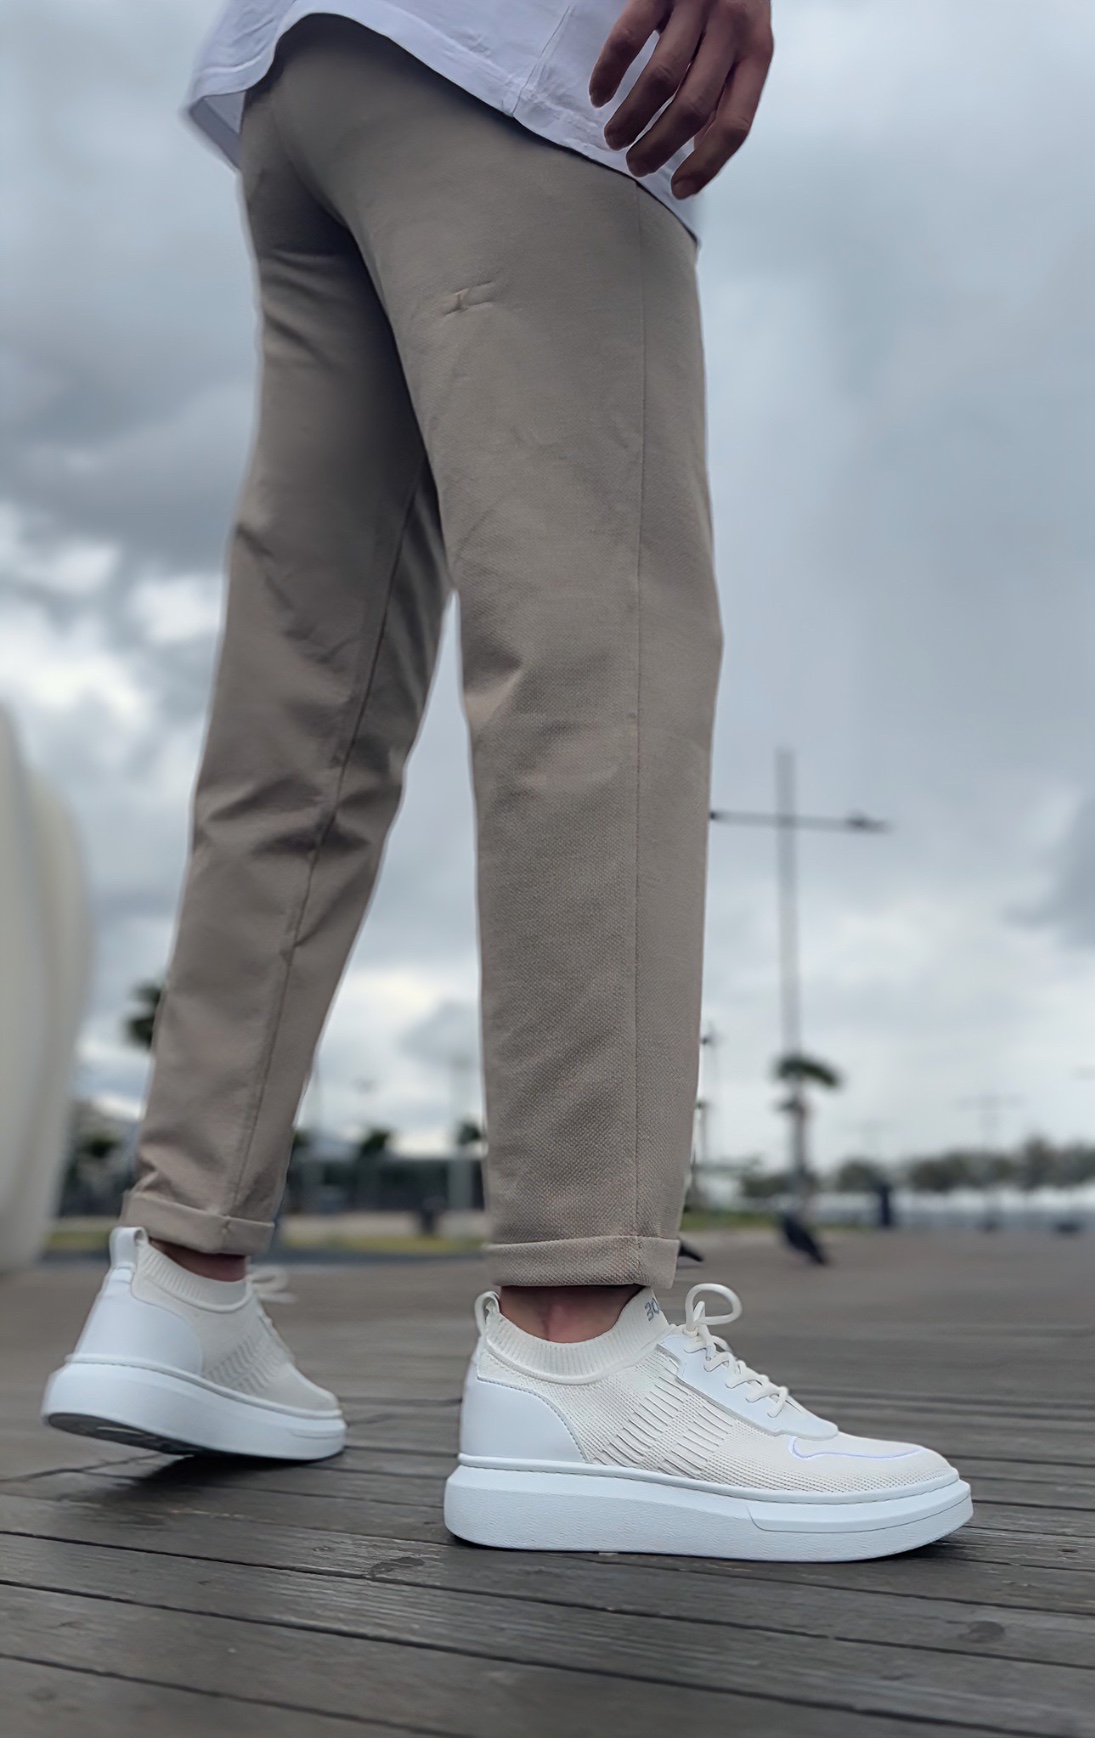 CLZ946 Özel Örme Triko Tarz Beyaz Renk Spor Ayakkabı